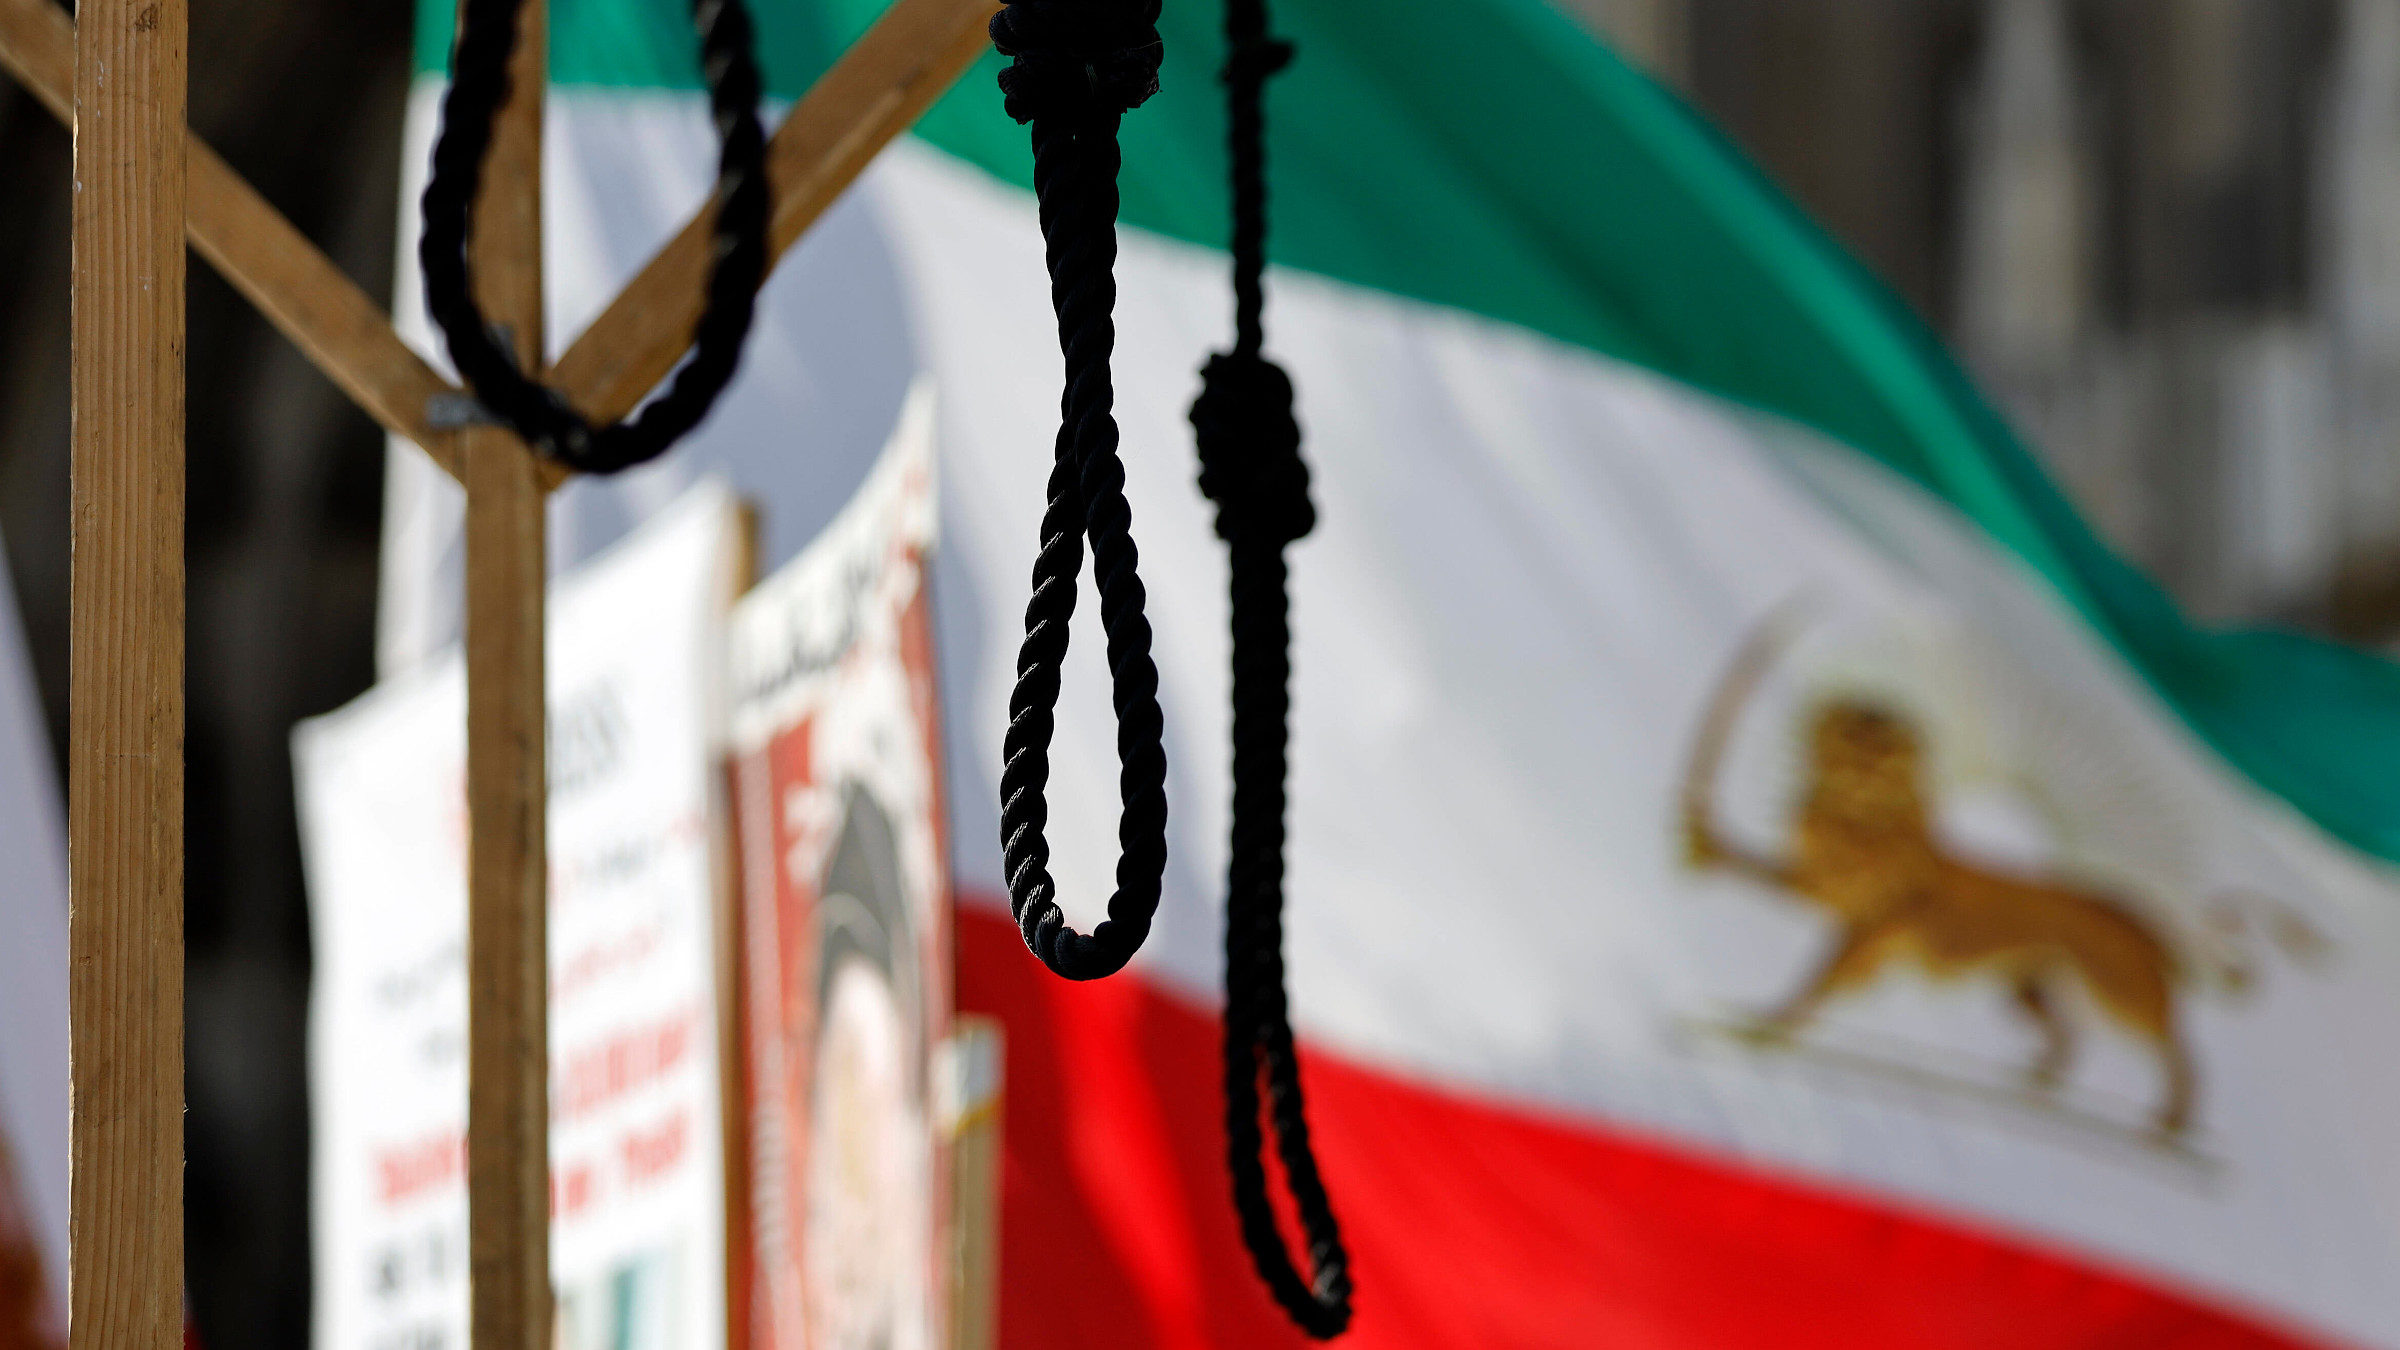 Ein Strick hängt an einem Galgen, im Hintergrund ist eine iranische Flagge zu sehen. Das Bild wurde bei einer Demonstration von Iraner*innen in Berlin aufgenommen.